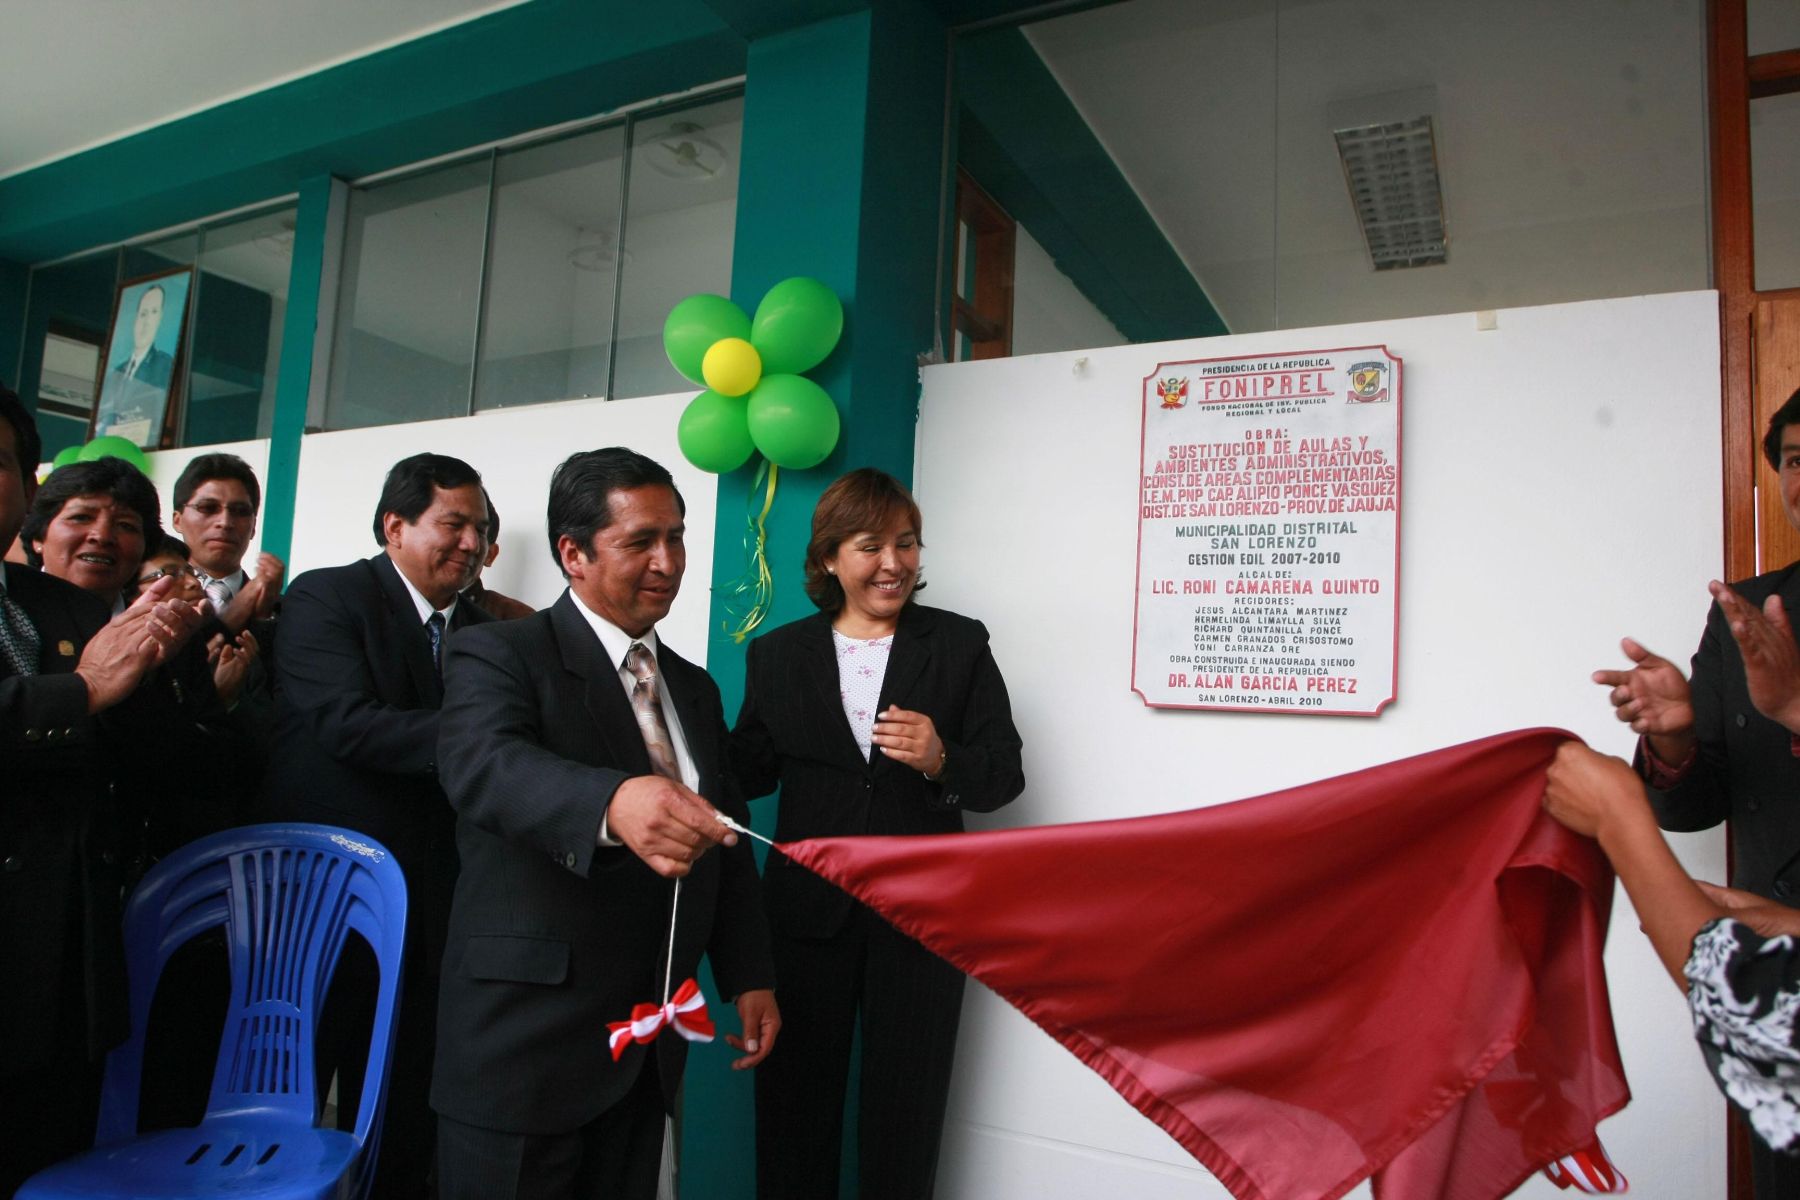 Ministra de la Mujer Nidia Vílchez inauguró colegio en provincia de Jauja con recursos del Foniprel. Foto: Andina/Mimdes.